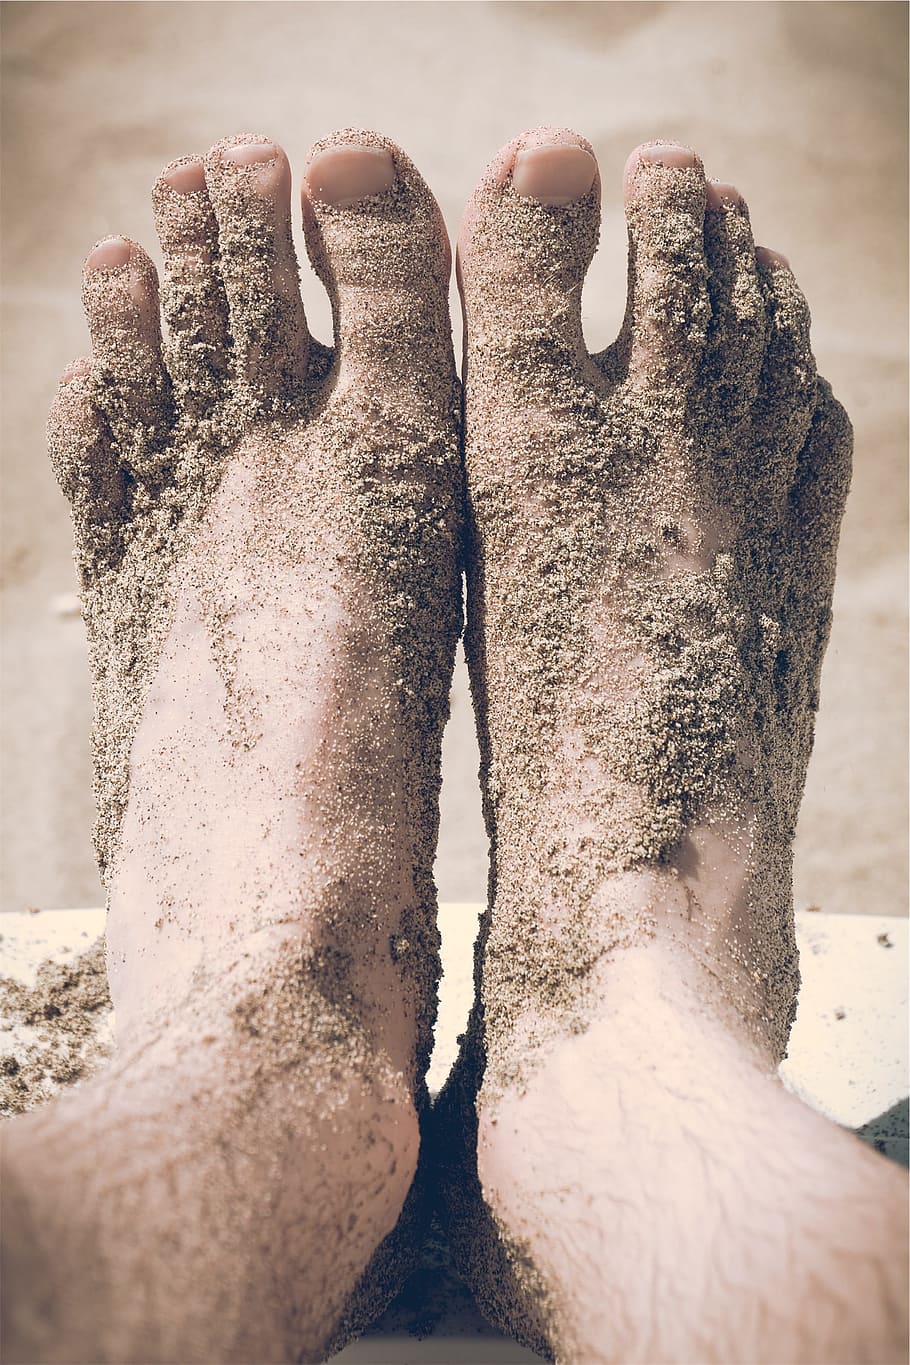 kaki, bertelanjang kaki, jari kaki, pasir, pantai, satu orang, bagian tubuh manusia, orang-orang nyata, kaki manusia, bagian rendah